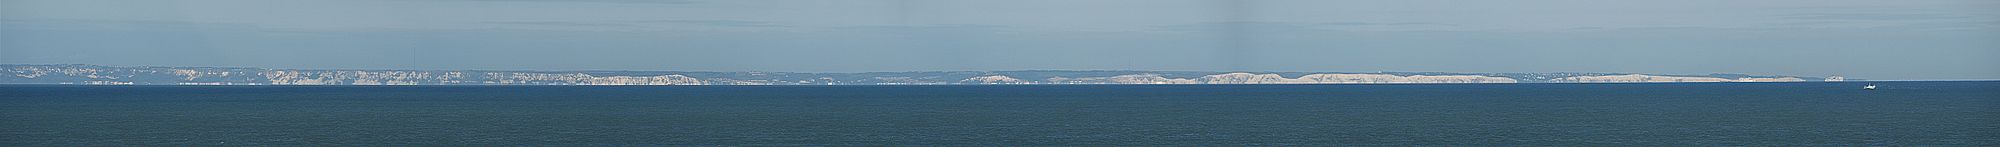 Panorama-Blick auf die Kreidefelsen vom Cap Gris-Nez